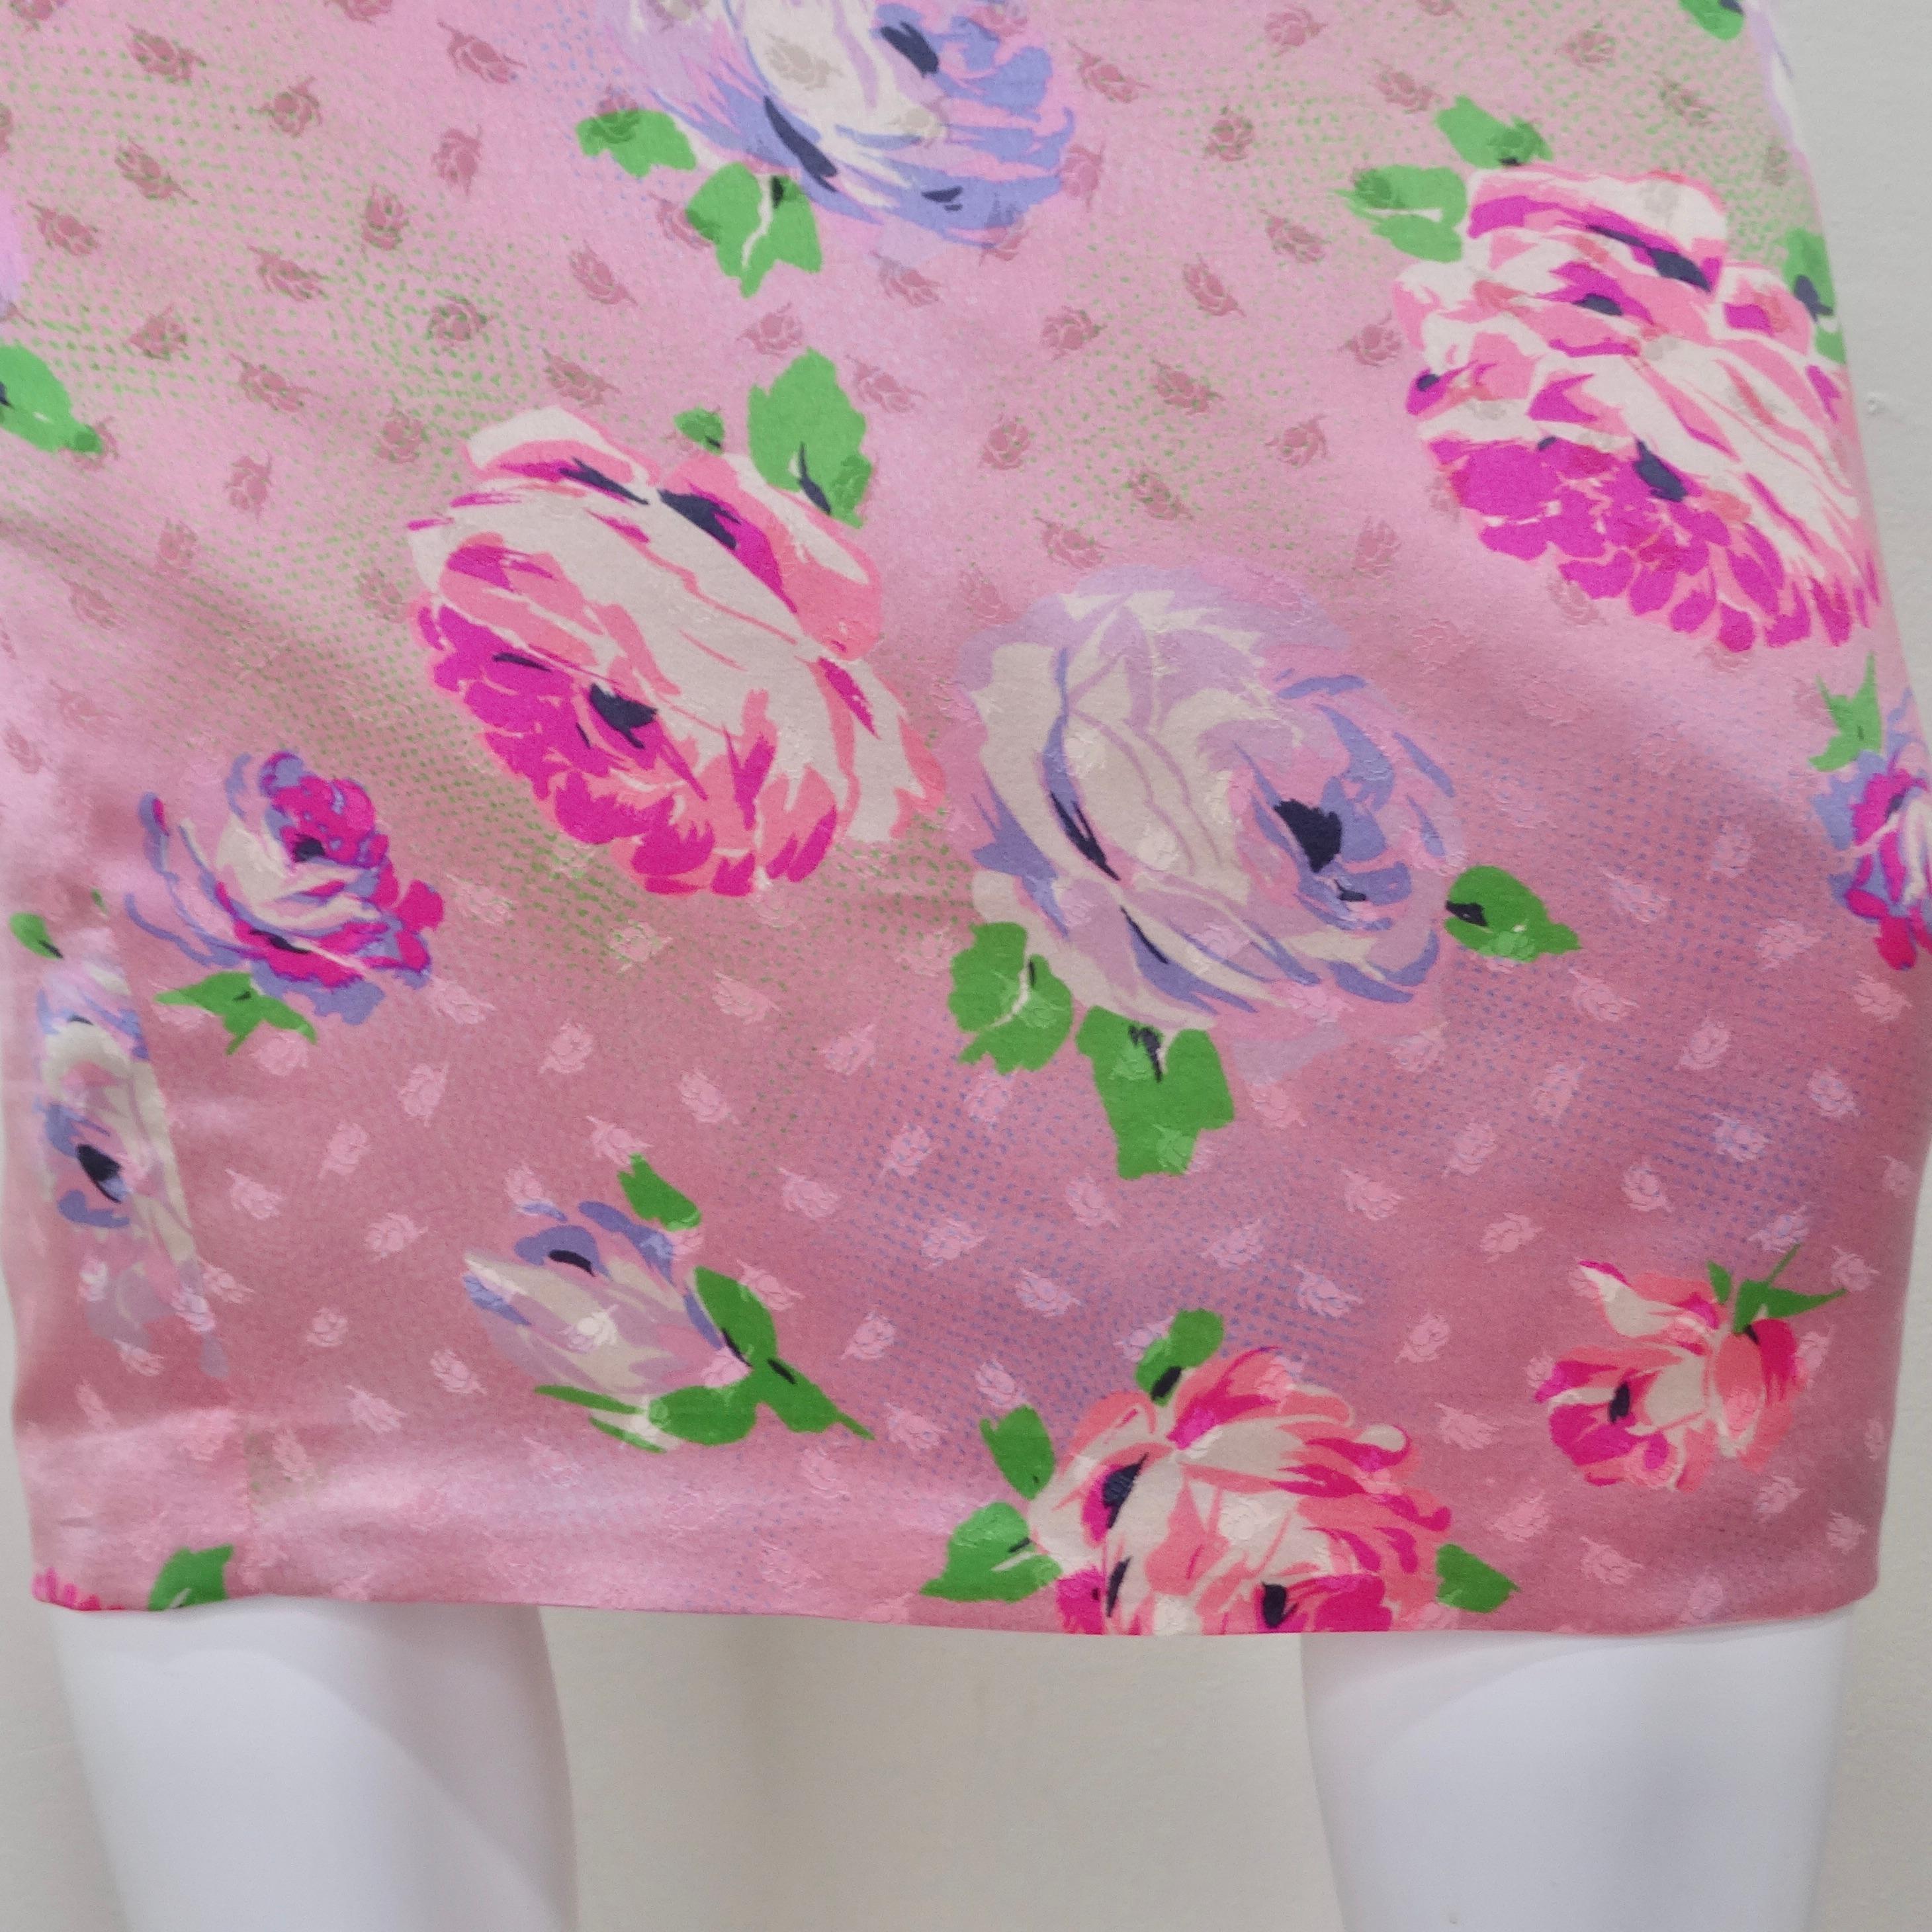 Emanuel Ungaro 1980s Pink Floral Pencil Skirt For Sale 1